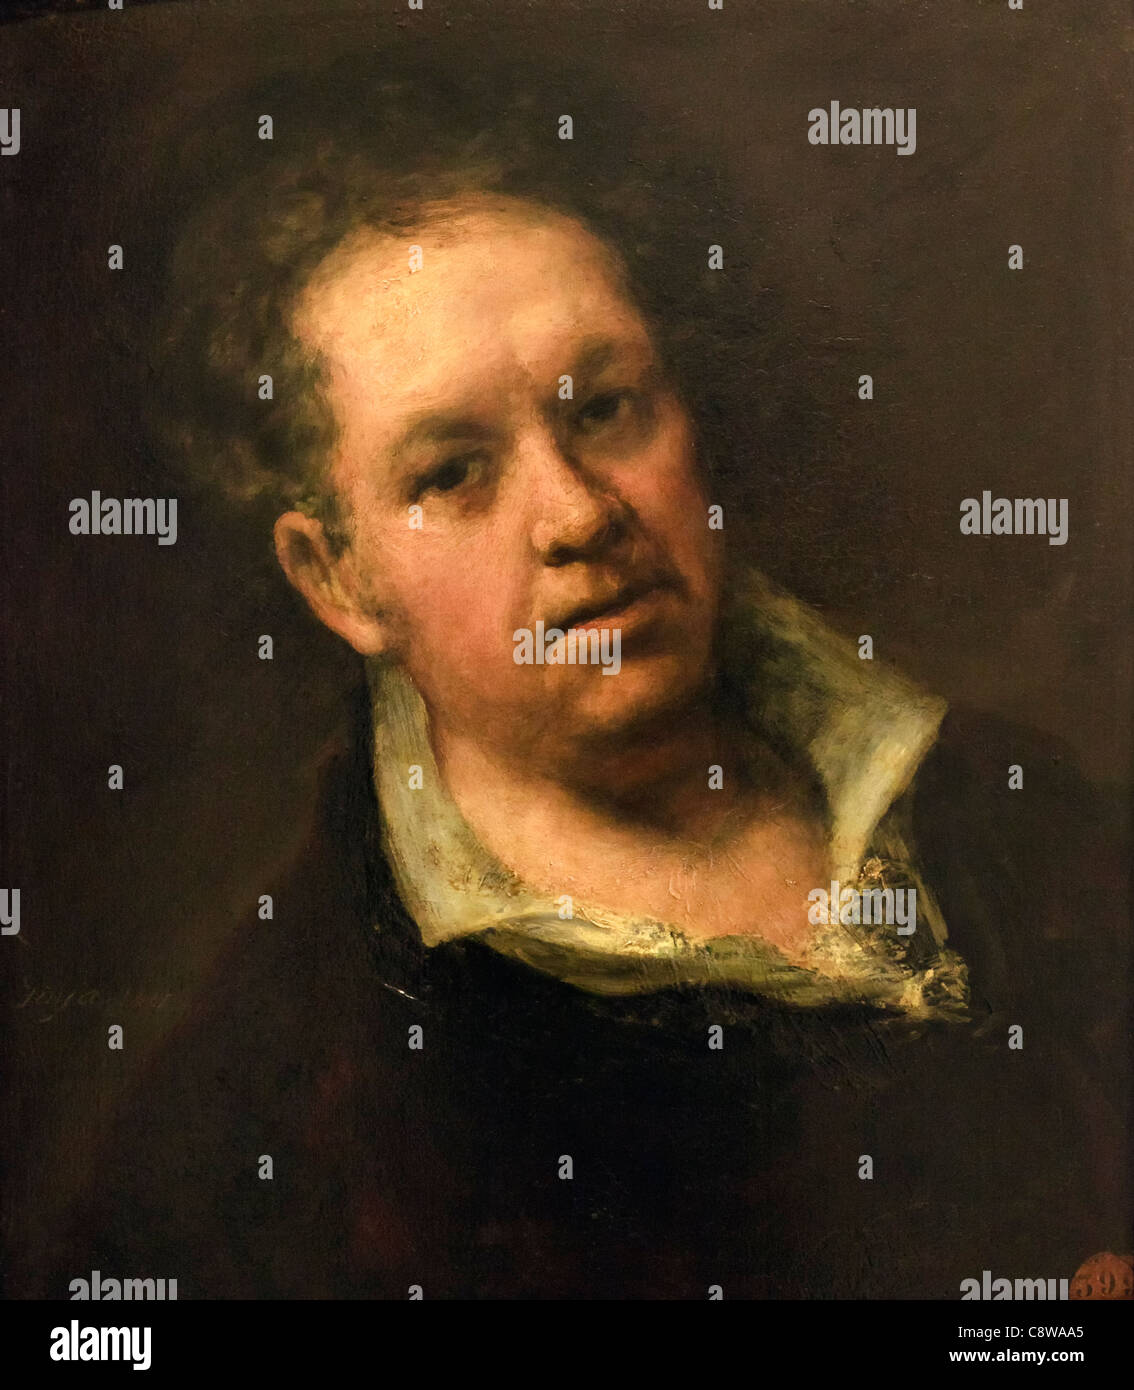 Auto-retrato. Francisco de Goya, con 69 años de edad. Francisco José de Goya y Lucientes, 1746 - 1828. Pintor y grabador español romántico. Foto de stock